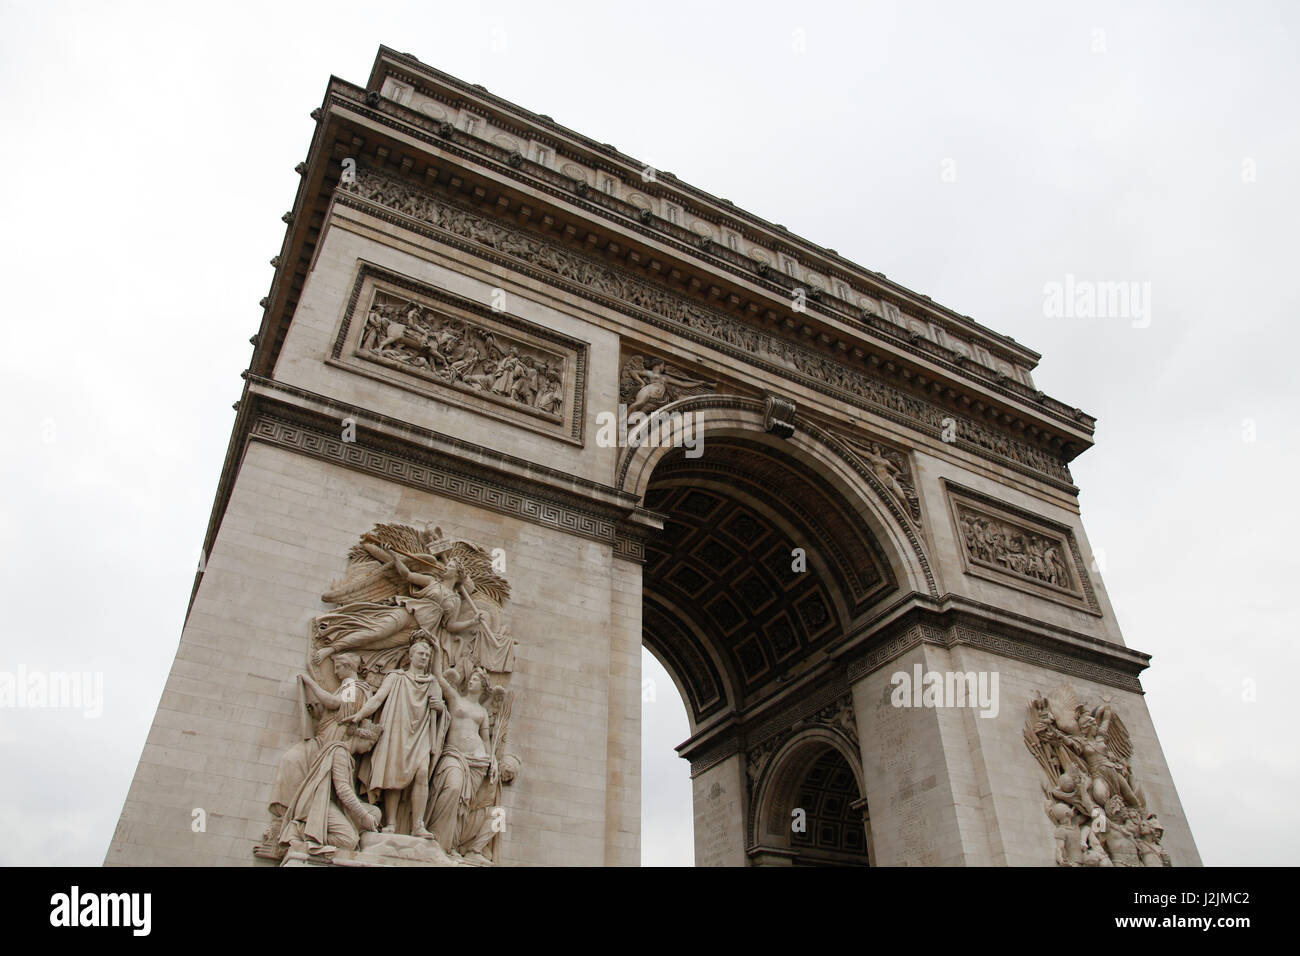 L'Arc De Triomphe Monument si trova all'estremità occidentale degli Champs-Élysées, nel centro di Place Charles de Gaulle, Parigi, Francia. Foto Stock